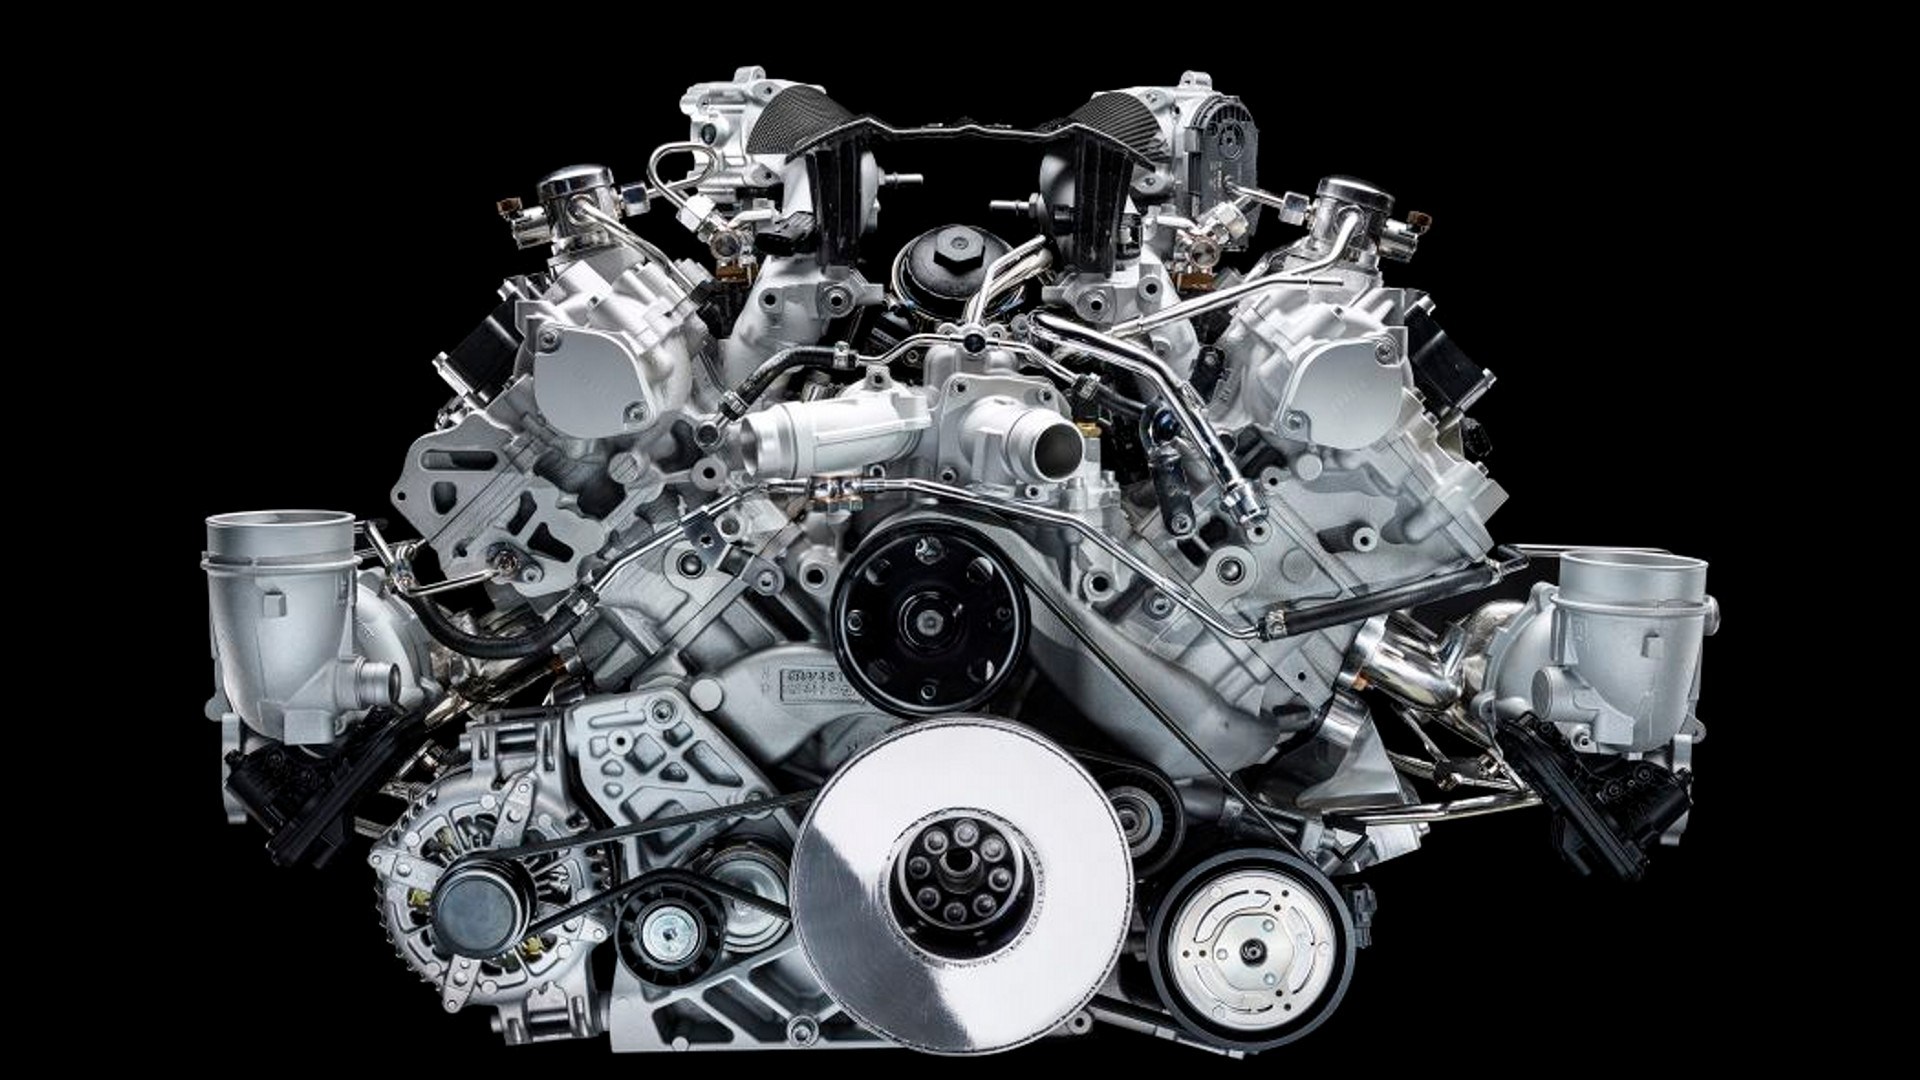 Maserati presenta a Nettuno, el nuevo motor que no es “100 % fabricado en casa”